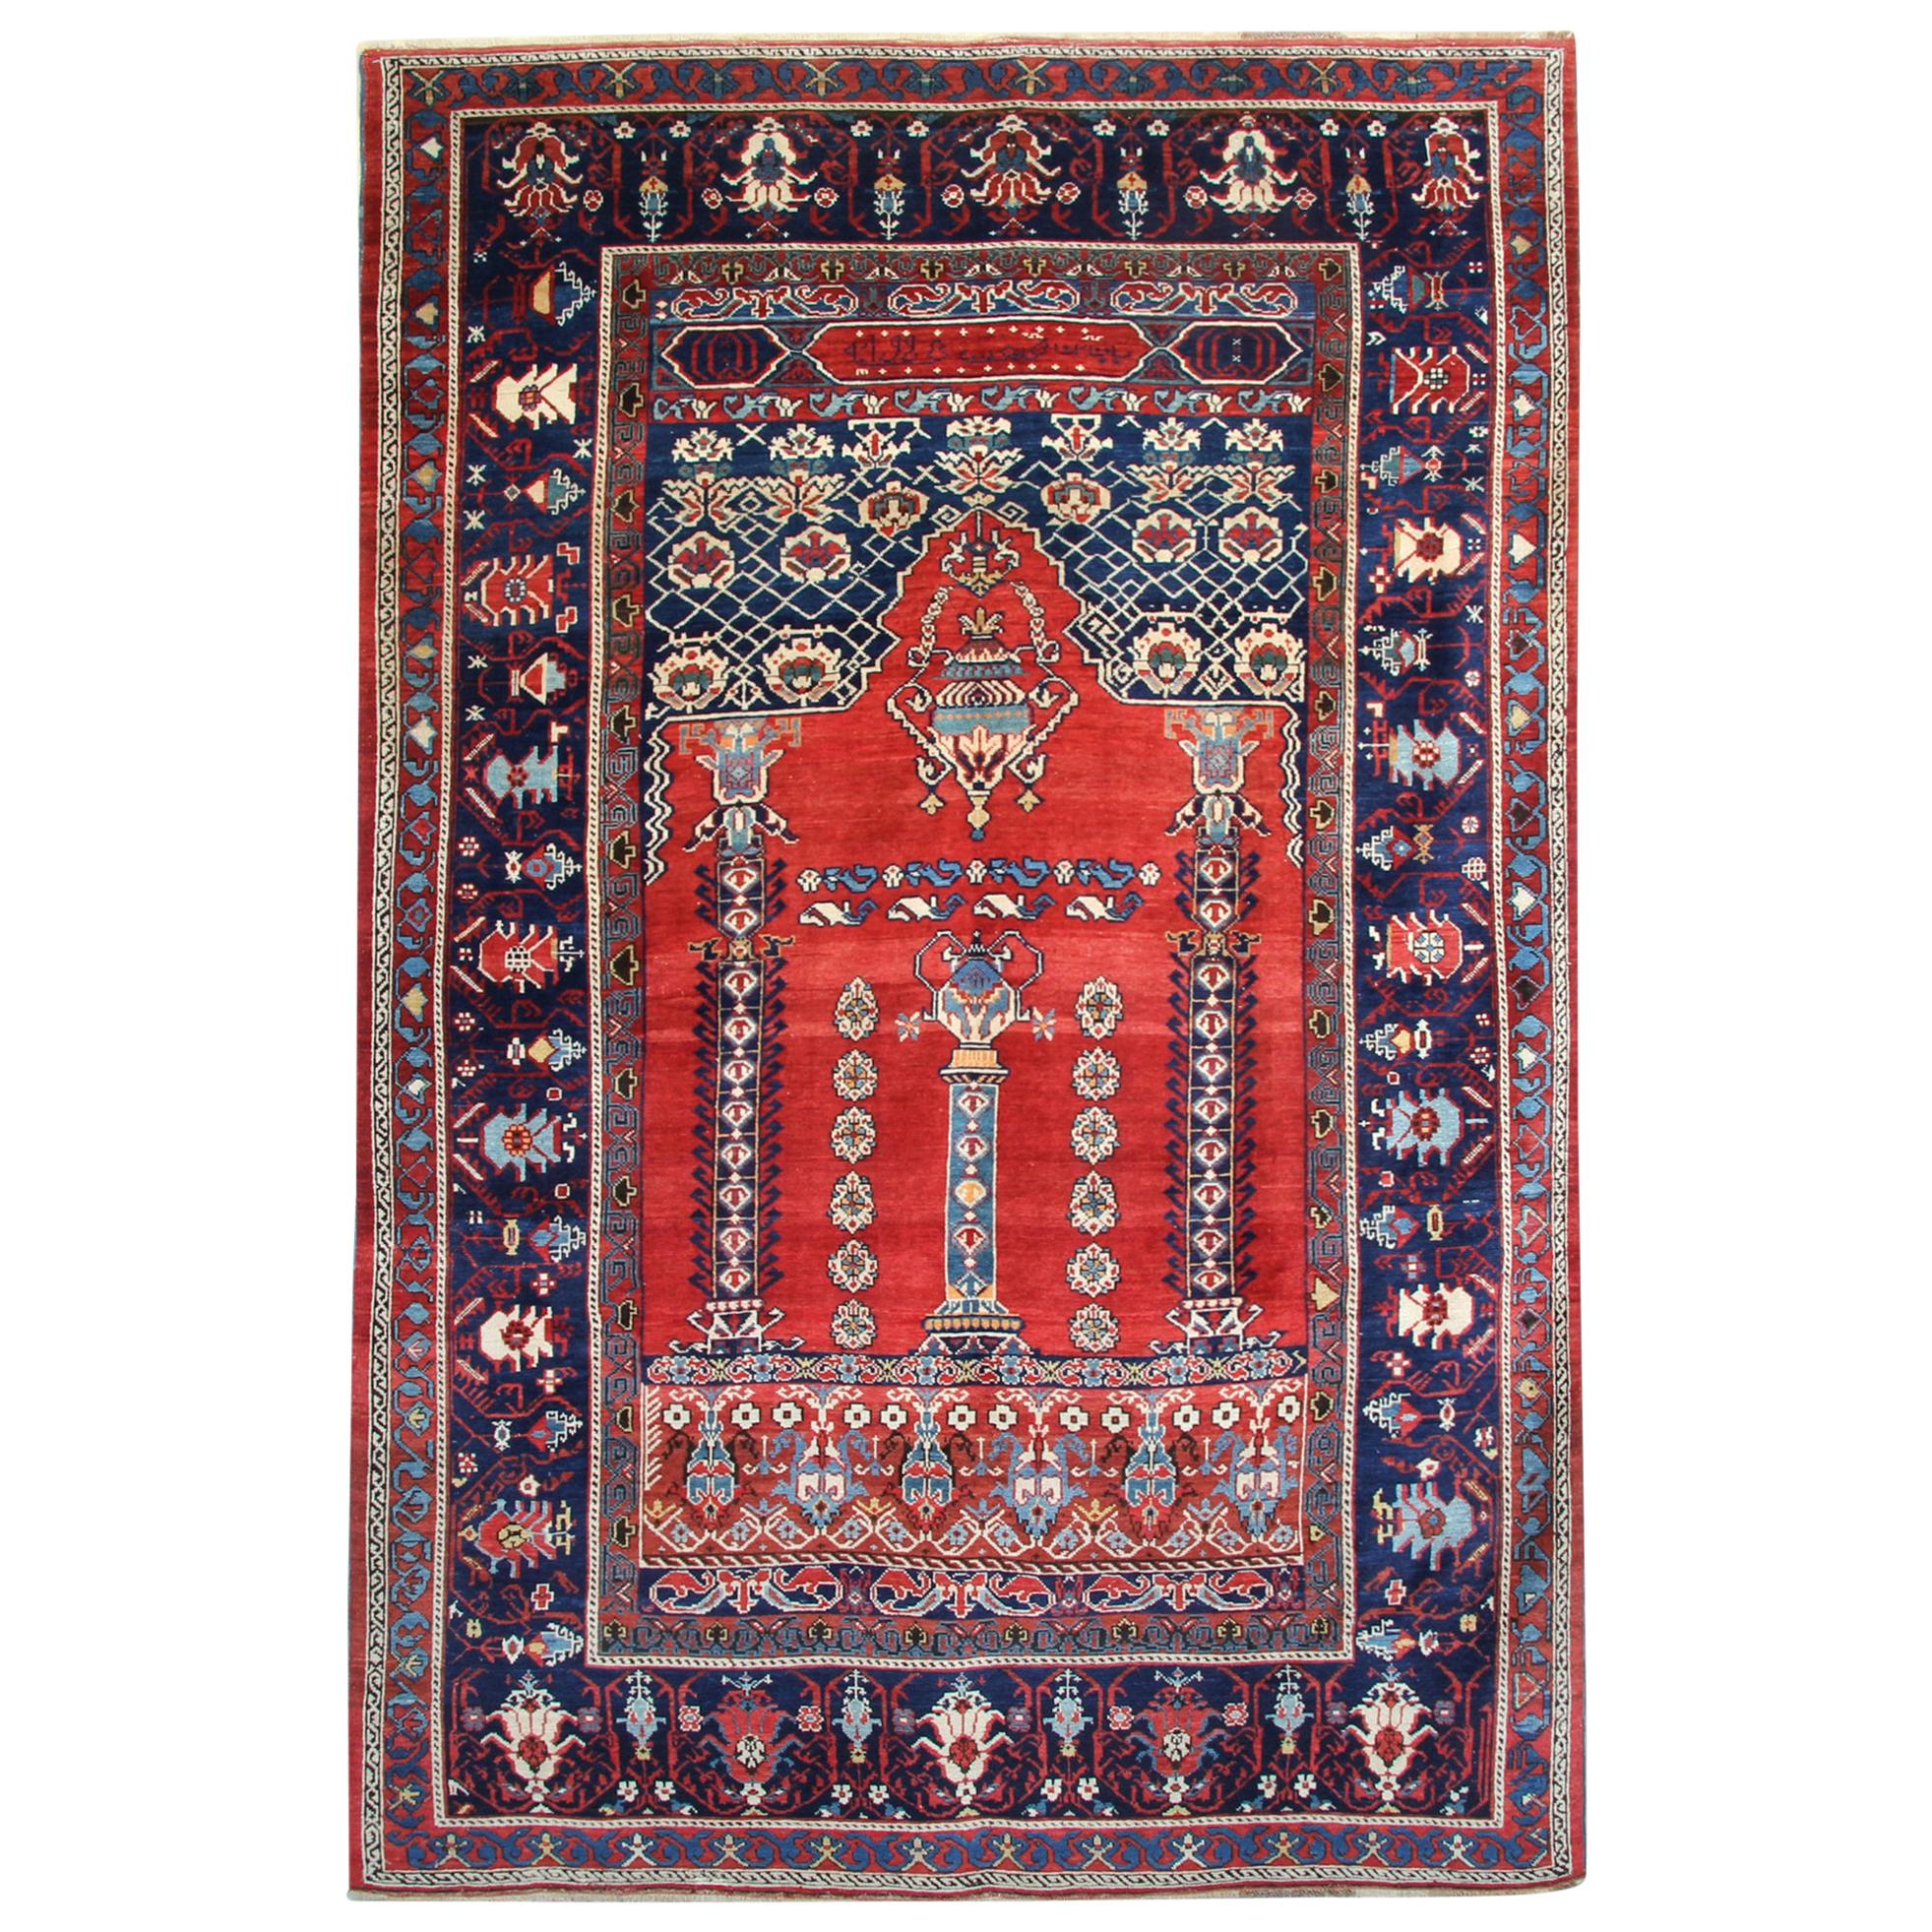 Tapis anciens, tapis rouge fait main, tapis caucasien Shirvan rouge oriental